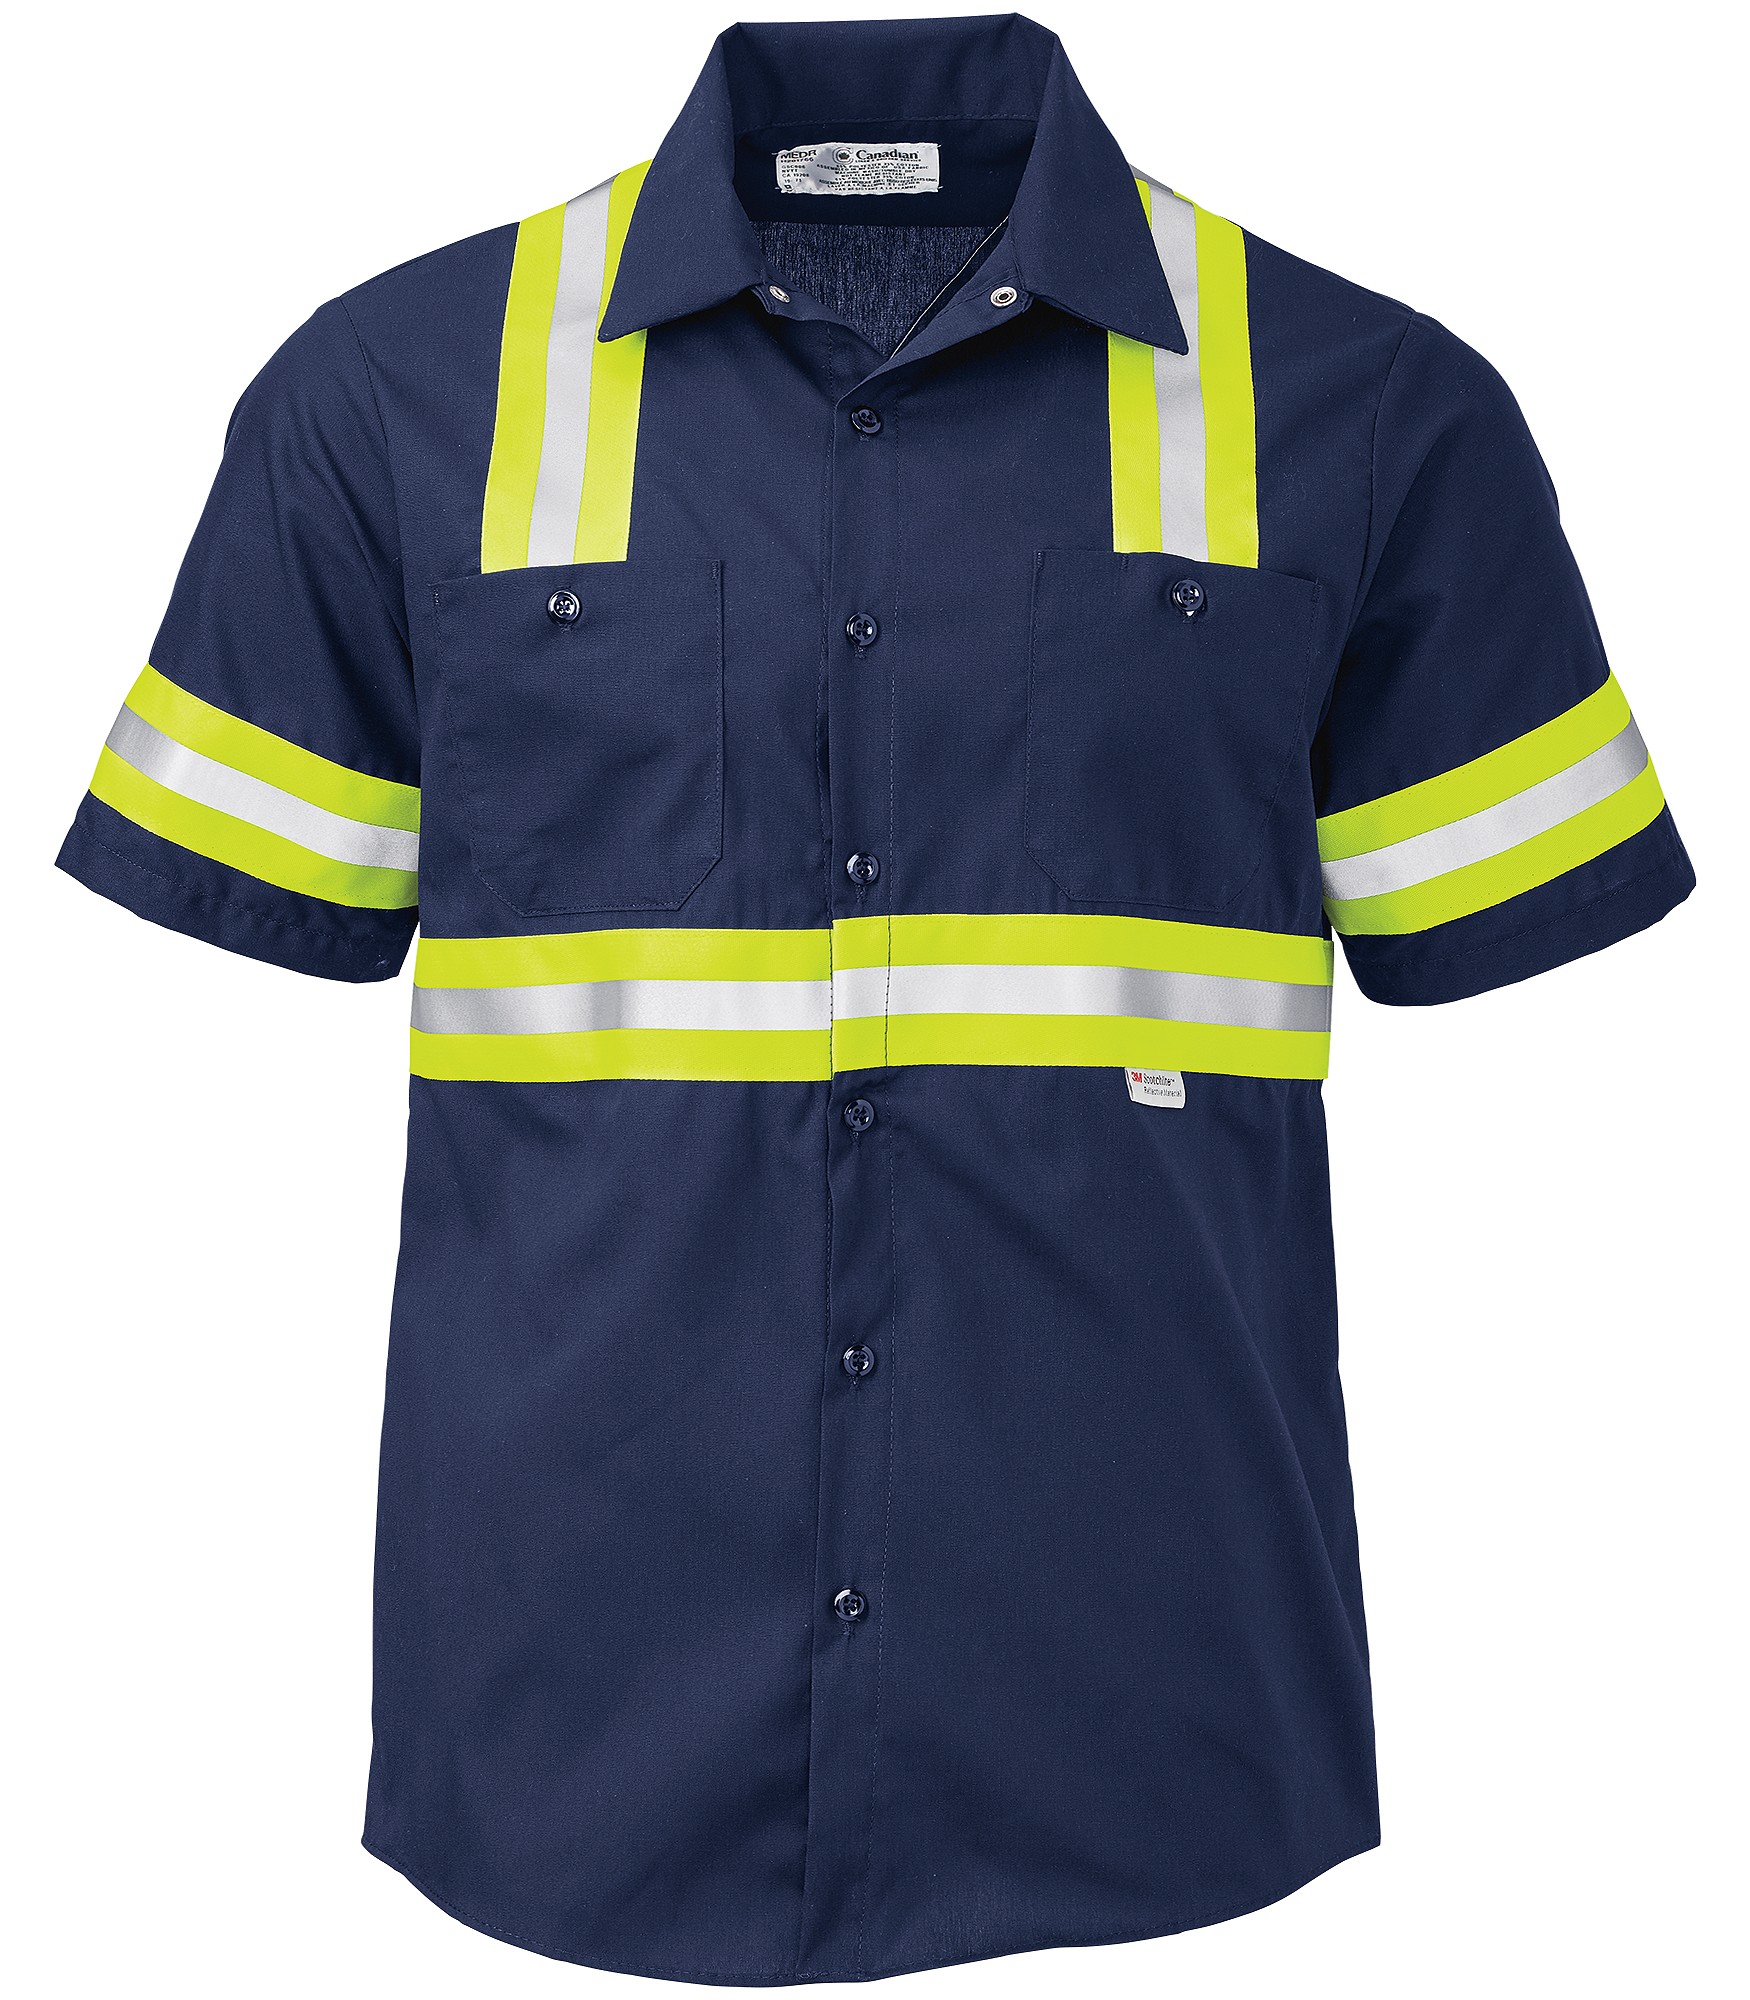 AMP_CA | Canadian Linen Enhanced Vis Short Sleeve Work Shirt